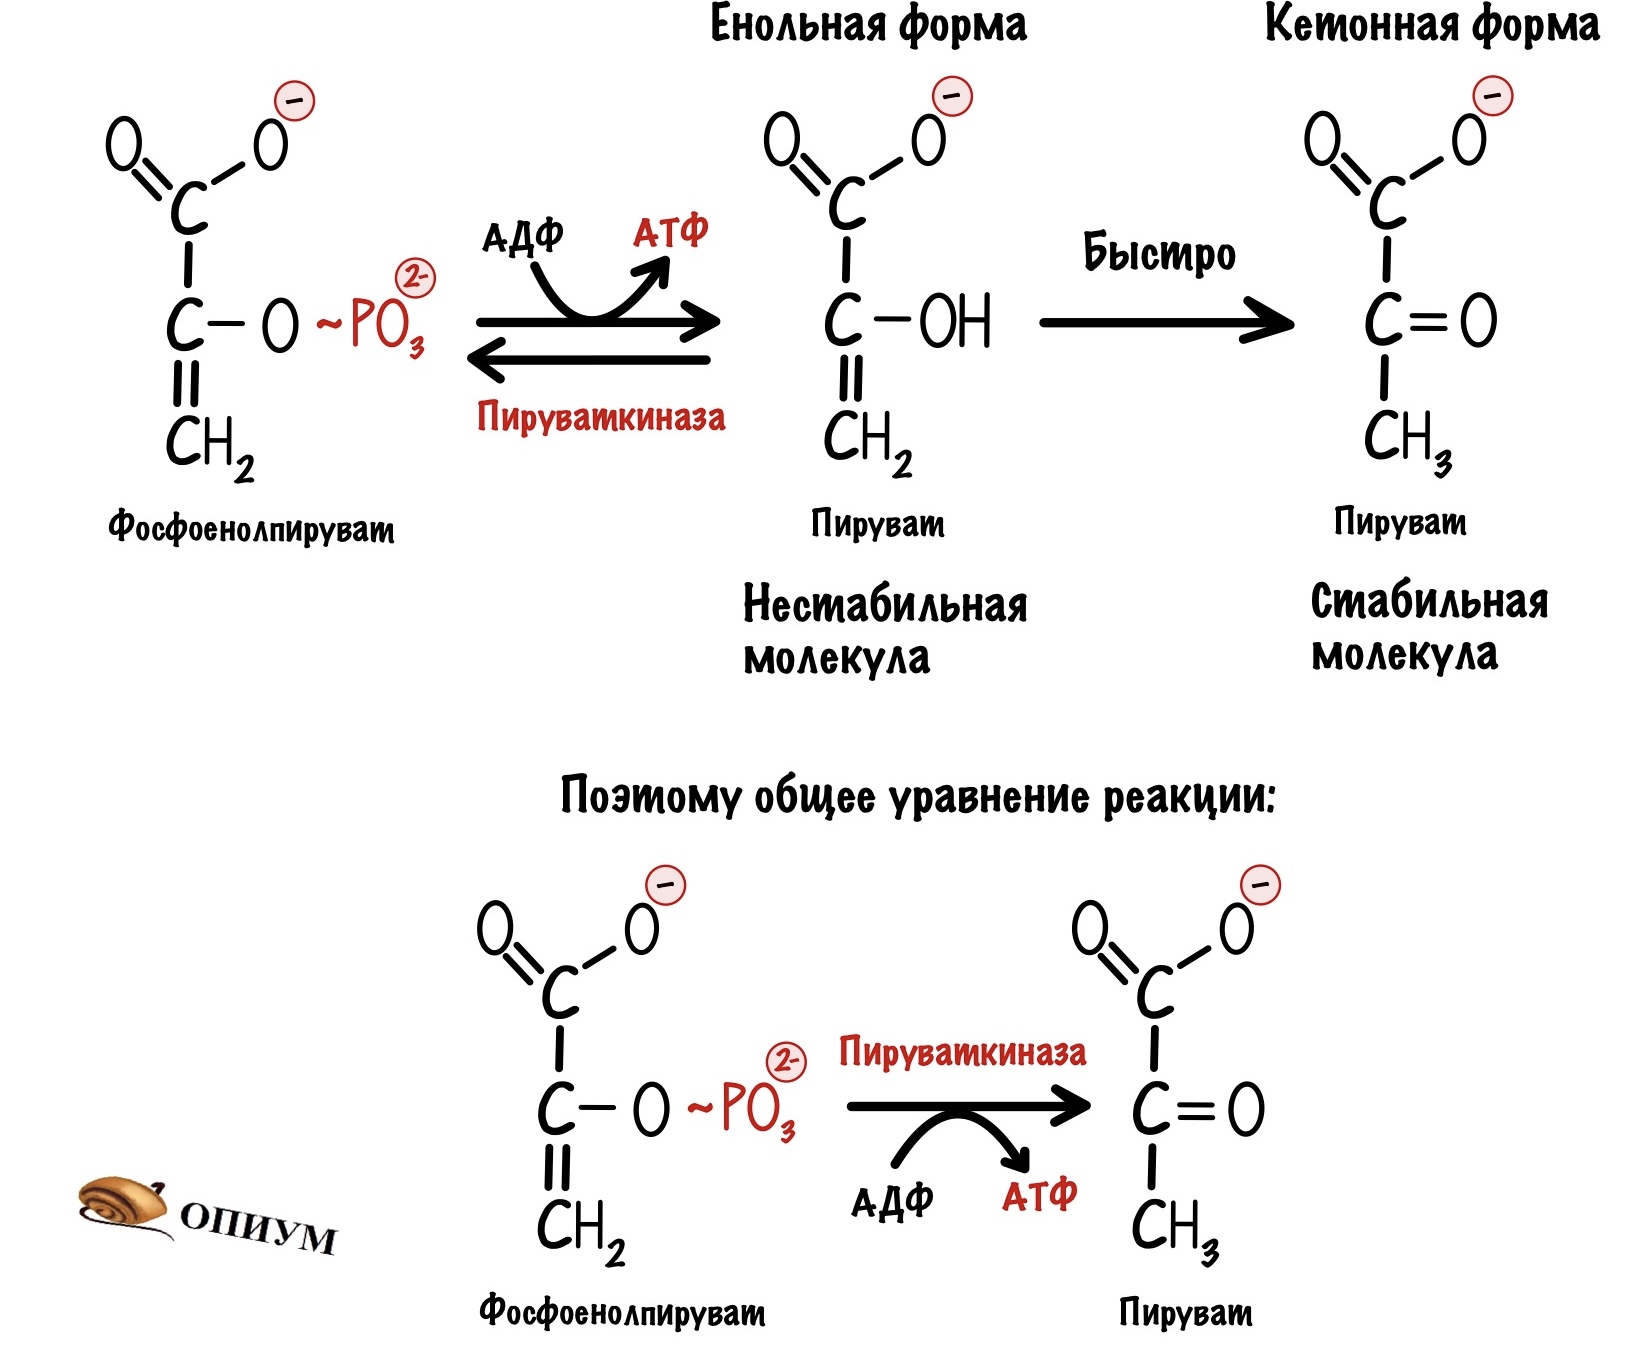 Пировиноградная кислота формула. Кето и енольные формы. Енольная форма пировиноградной кислоты. Кето-енольные формы пировиноградной кислоты. Обходные реакции глюконеогенеза.